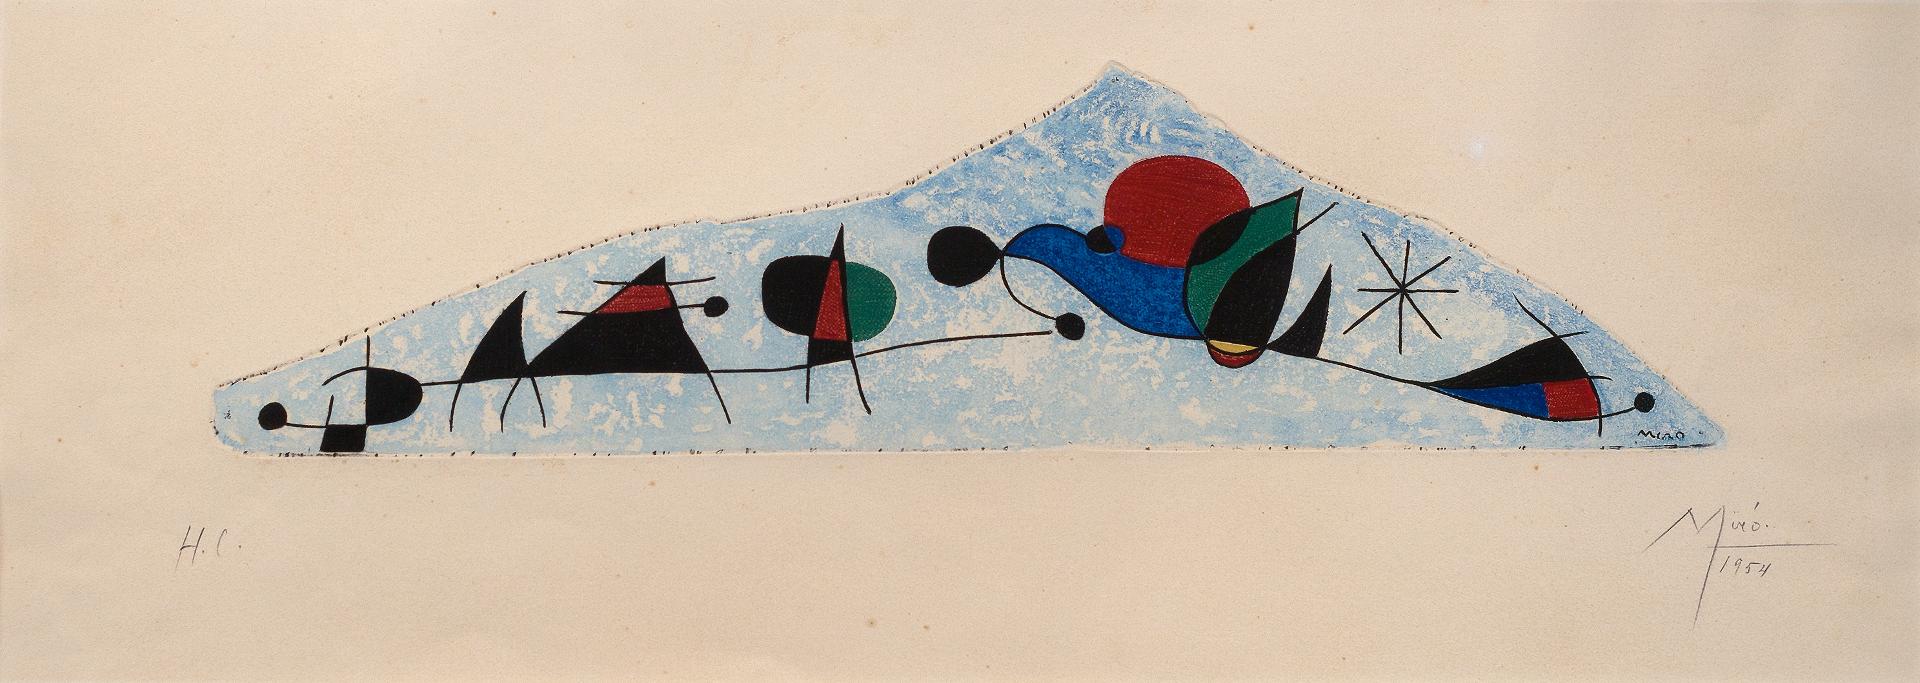 Joan Miró (1893-1983) - Et l'oiseau s'enfuit vers les pyramides aux flancs ensanglantés par la chute de rubis, 1954